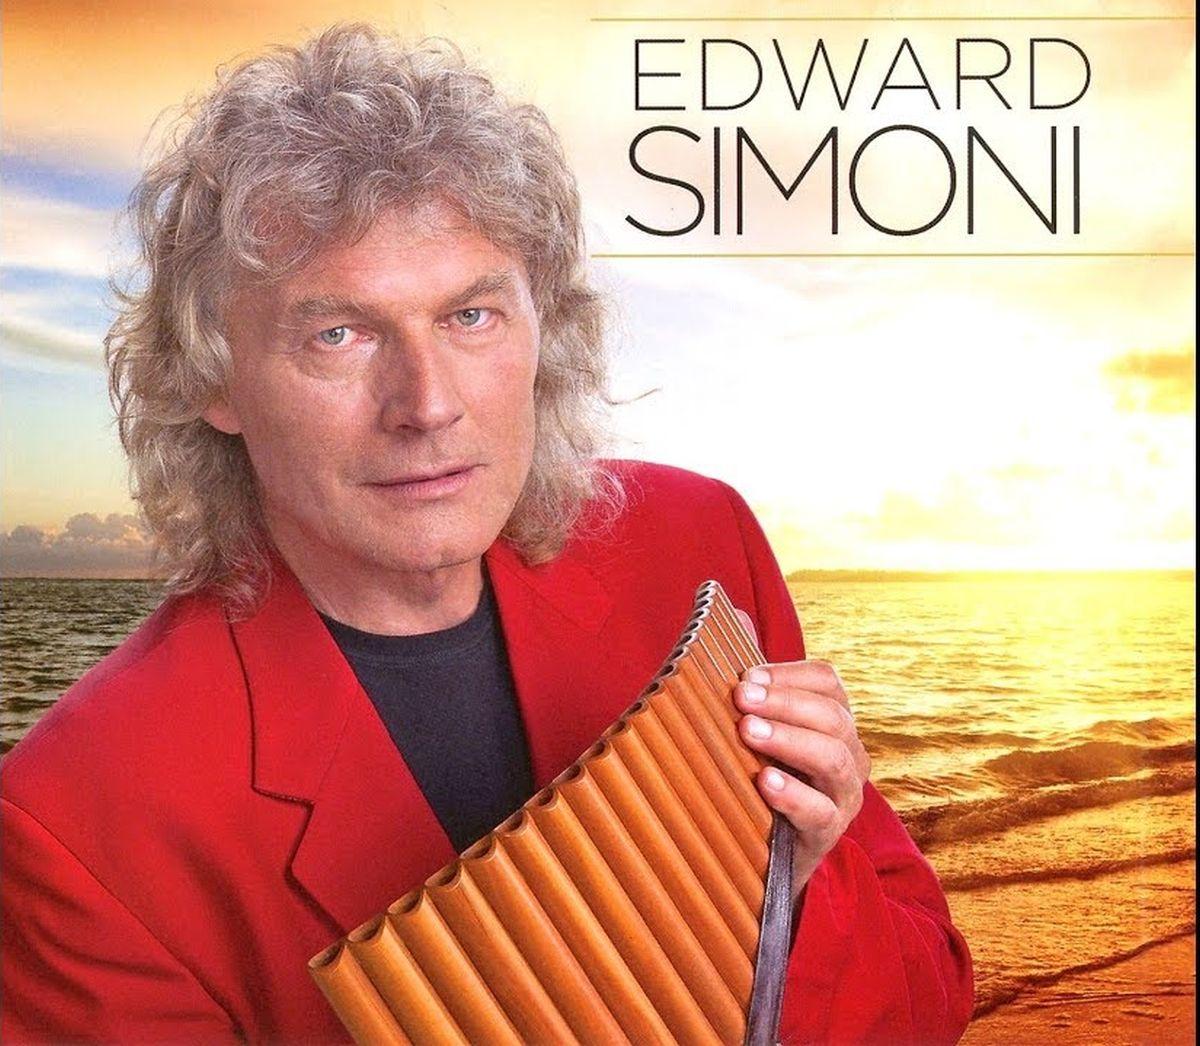 Edward Simoni